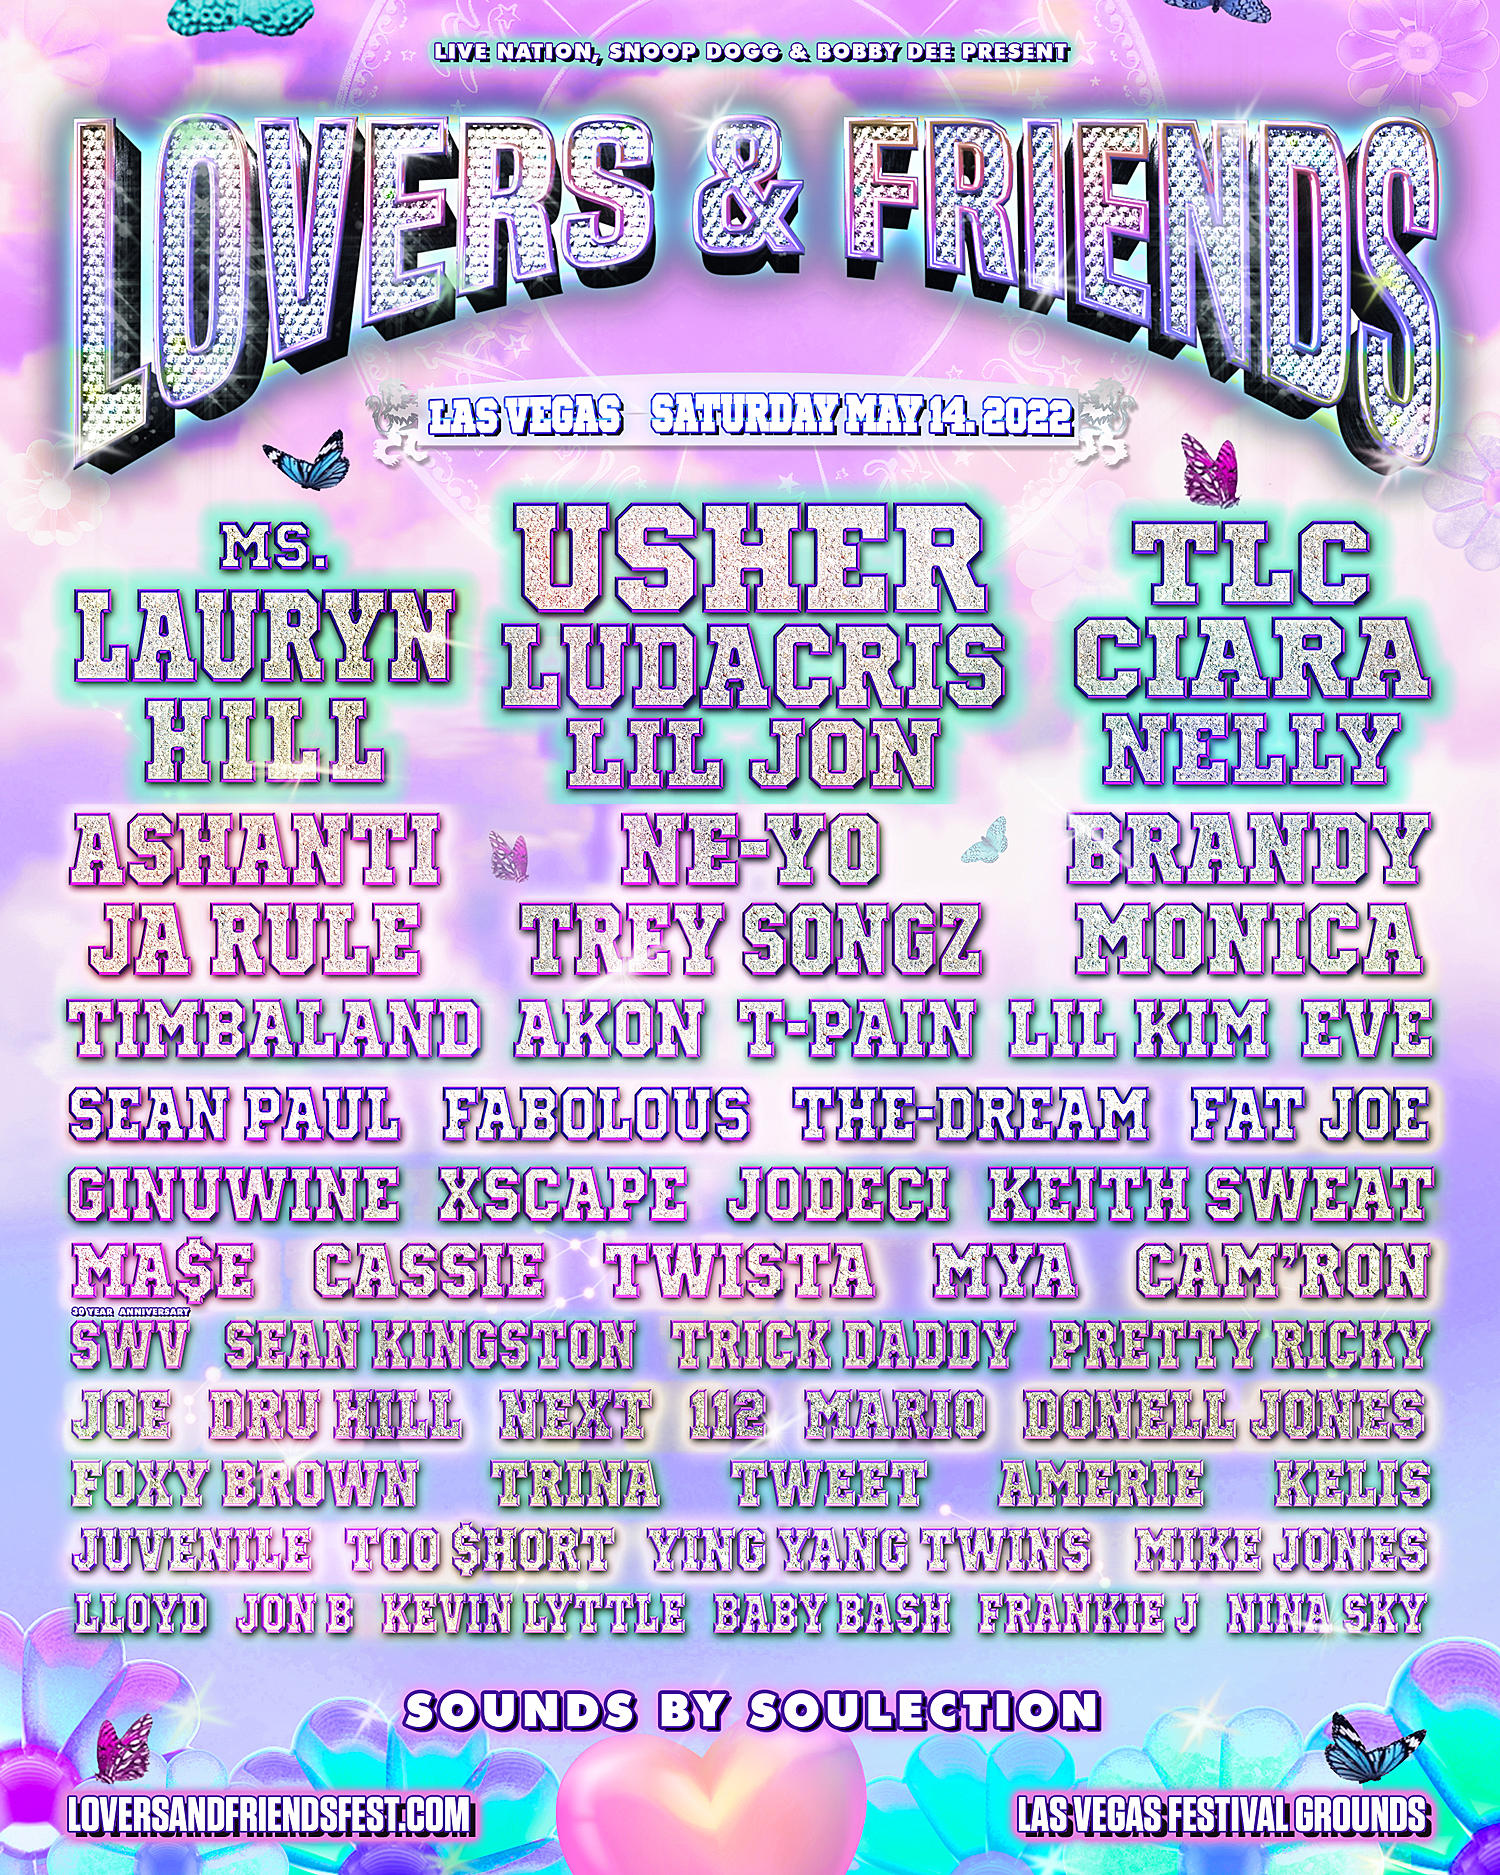 Lovers & Friends Moves To Las Vegas In 2022 W/ Lauryn Hill, Usher/Ludacris/Lil Jon, Tlc, More